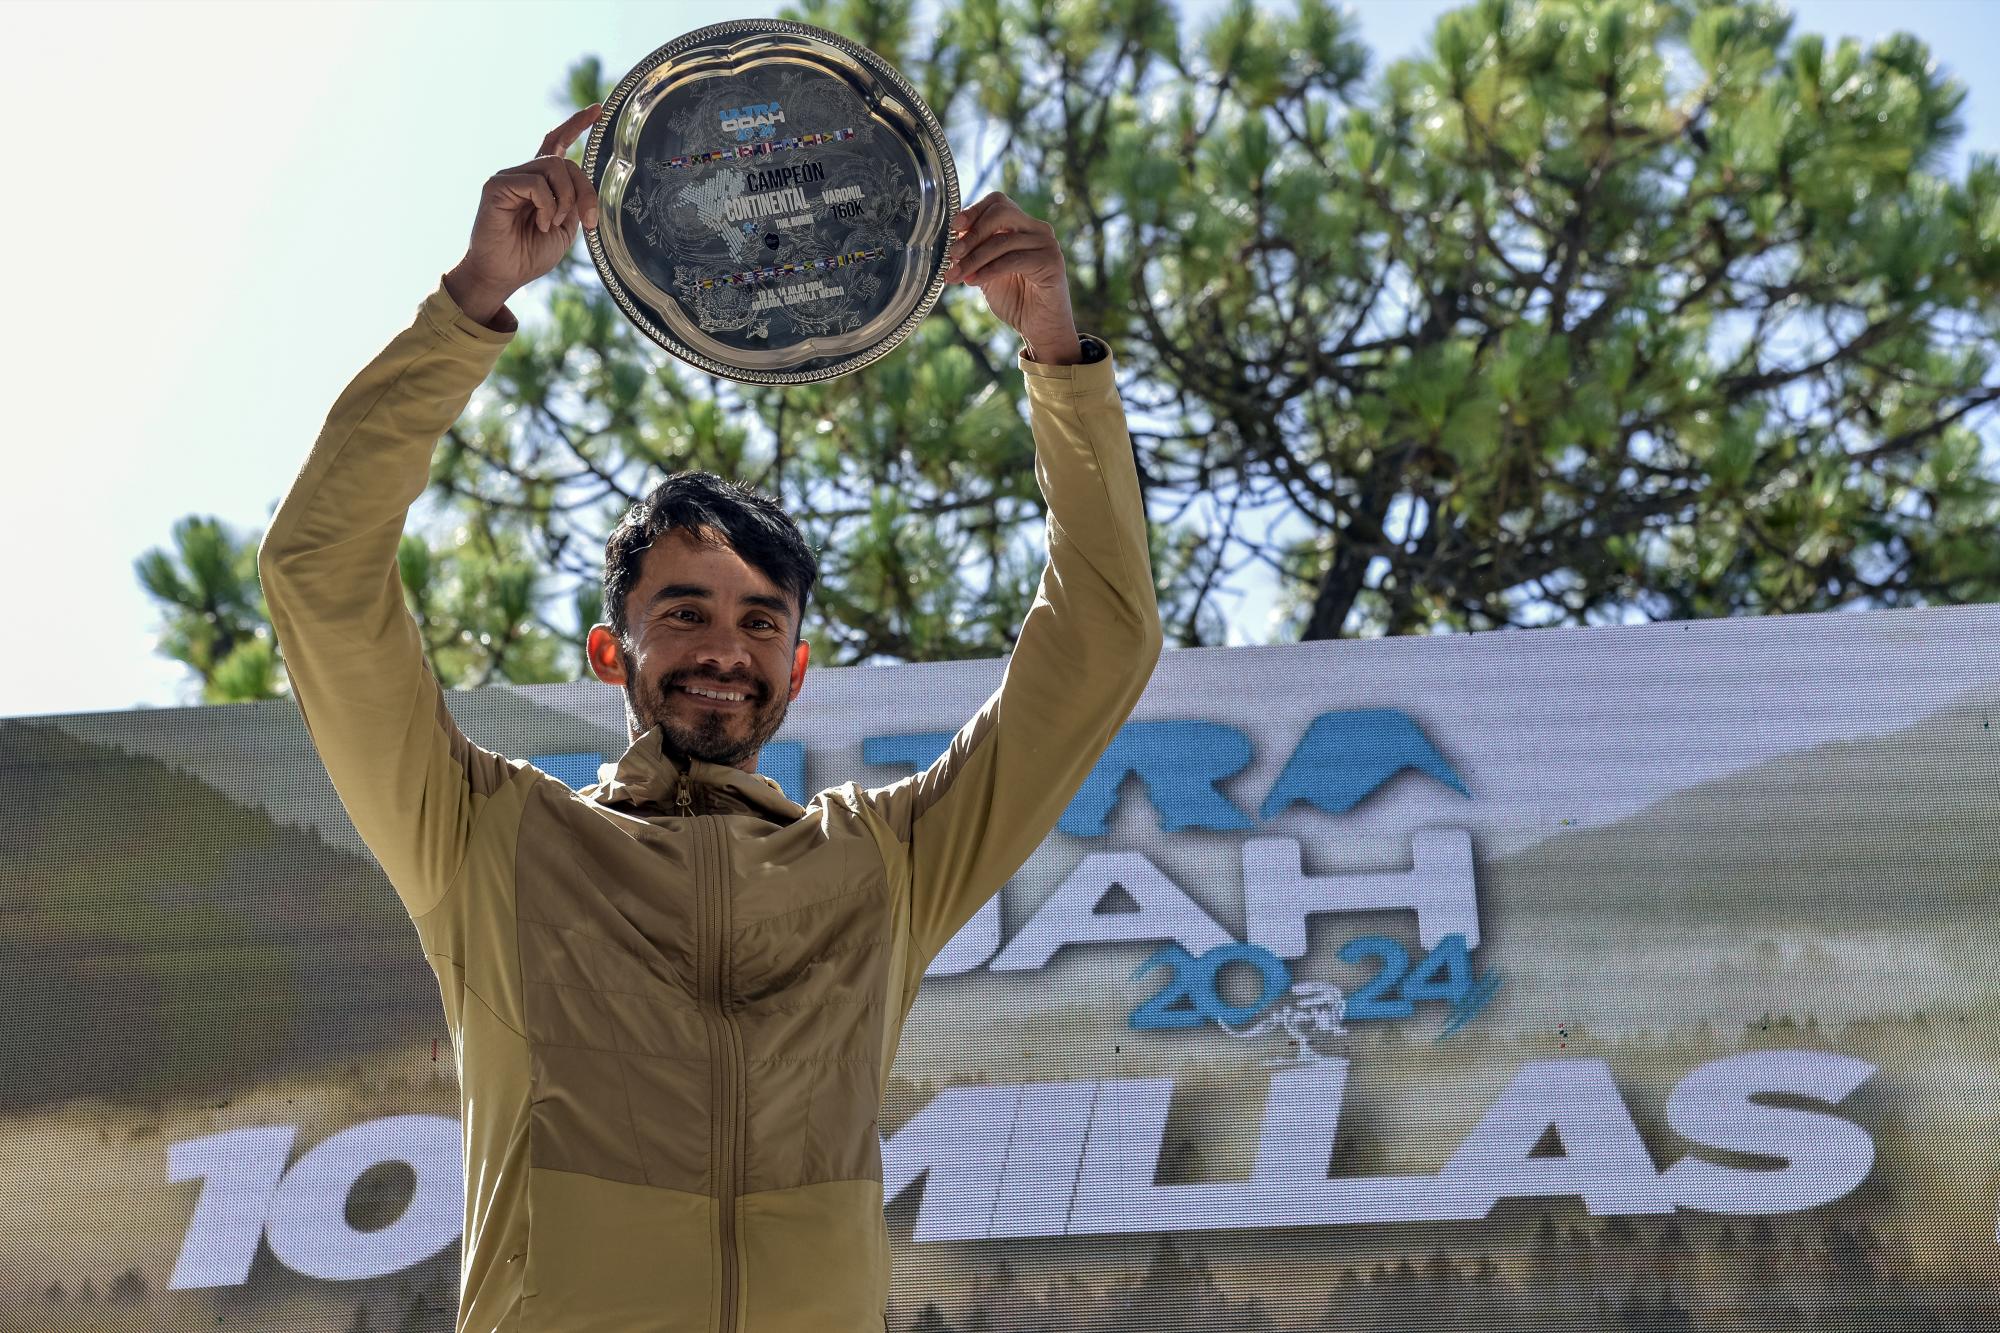 $!Luis Urbina, ganador del primero lugar en los 160K, celebra su triunfo con orgullo y satisfacción.